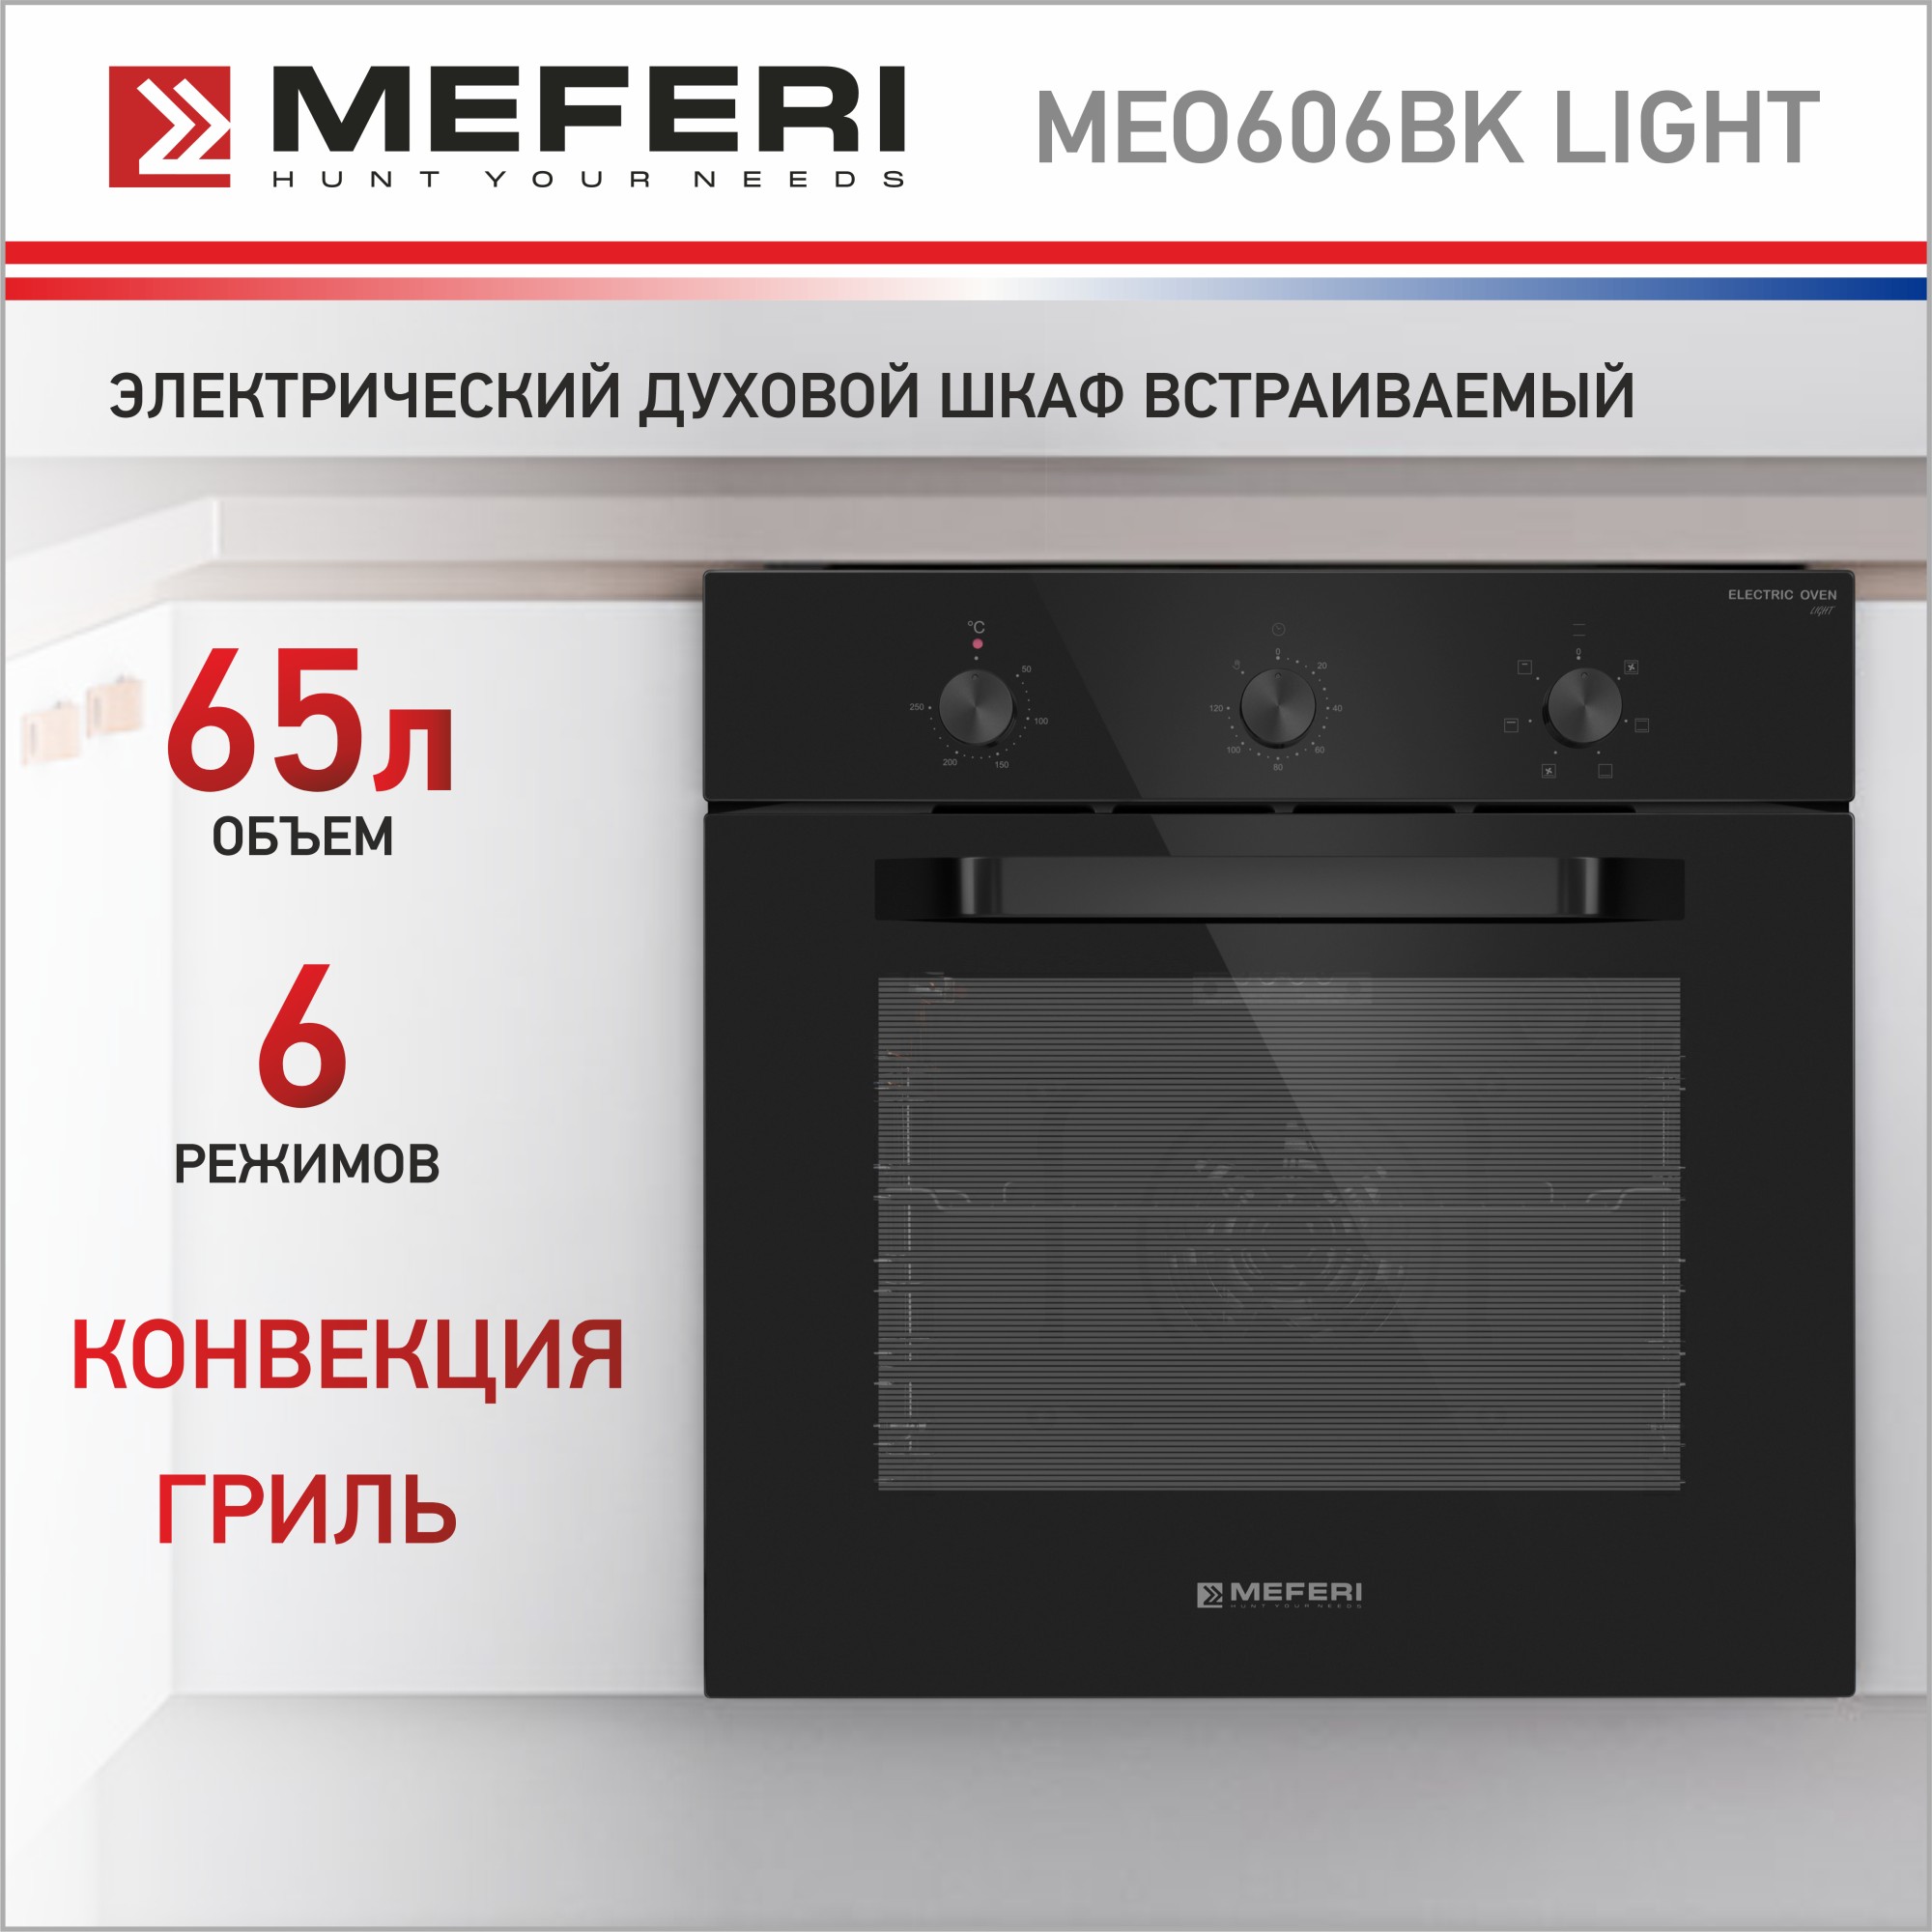 Электрический духовой шкаф MEFERI MEO606BK LIGHT научные опыты и эксперименты аниашвили к с вайткене л д спектор а а